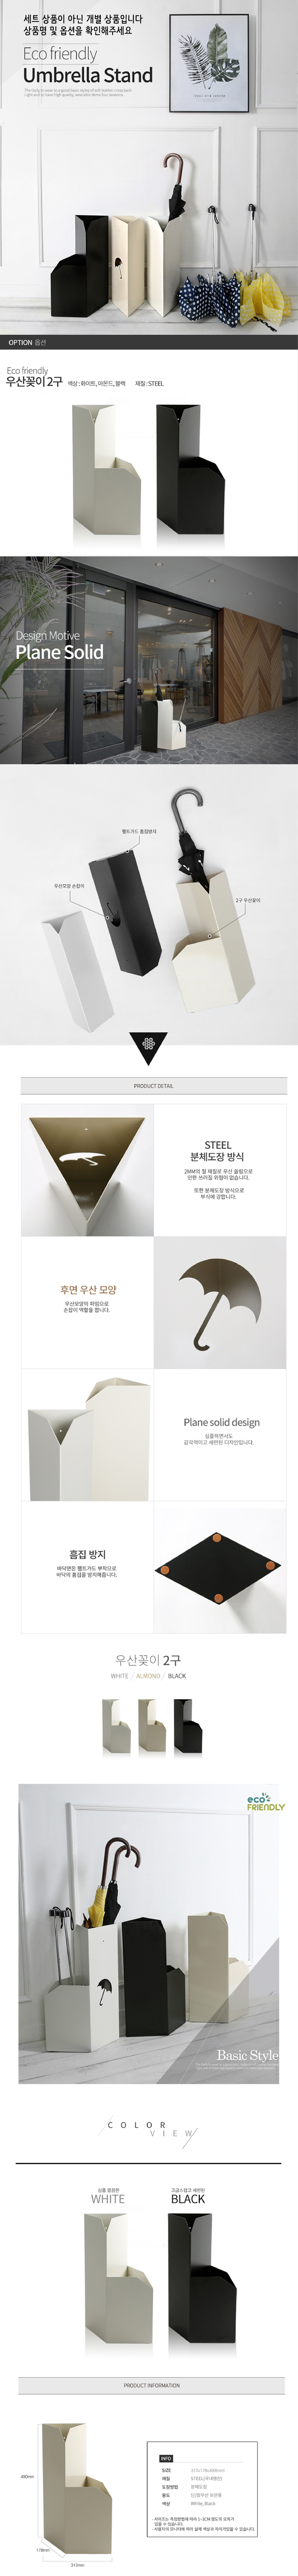 디자인 우산꽂이 2구 화이트 가정용우산꽂이 장우산꽂이 인테리어우산꽂이 우산거치대 철제우산꽂이 접이식우산꽂이 학원우산꽂이 우산정리함 심플우산꽂이 이쁜우산꽂이